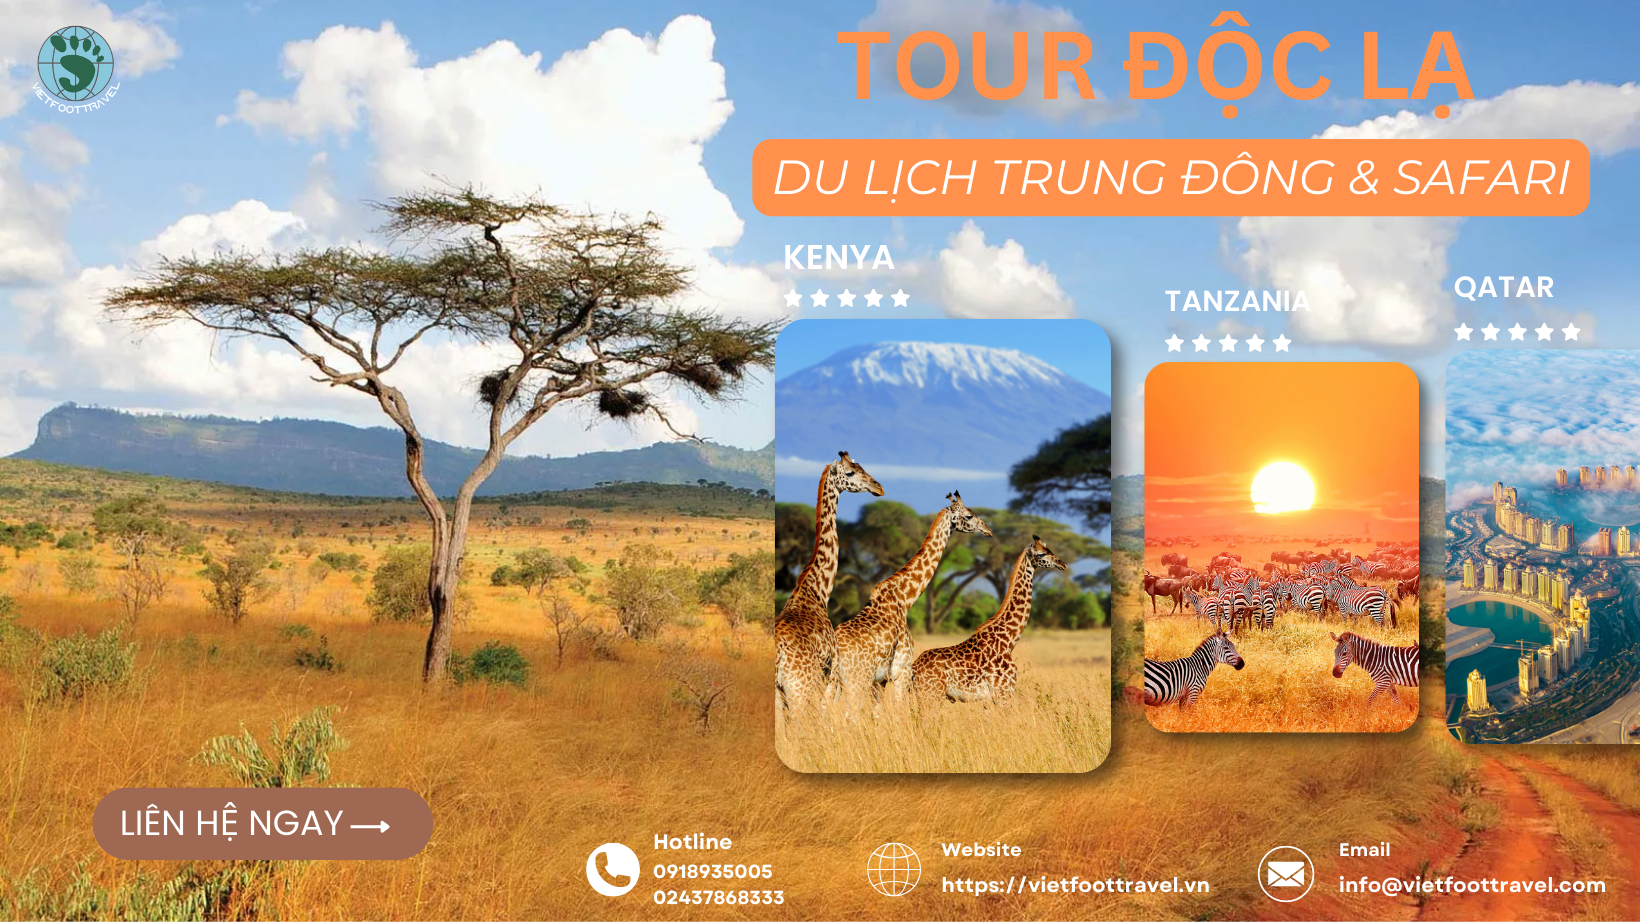 CHƯƠNG TRÌNH TOUR ĐỘC LẠ DU LỊCH TRUNG ĐÔNG & SAFARI (CHÂU PHI QATAR - KENYA- TANZANIA) 10N9Đ